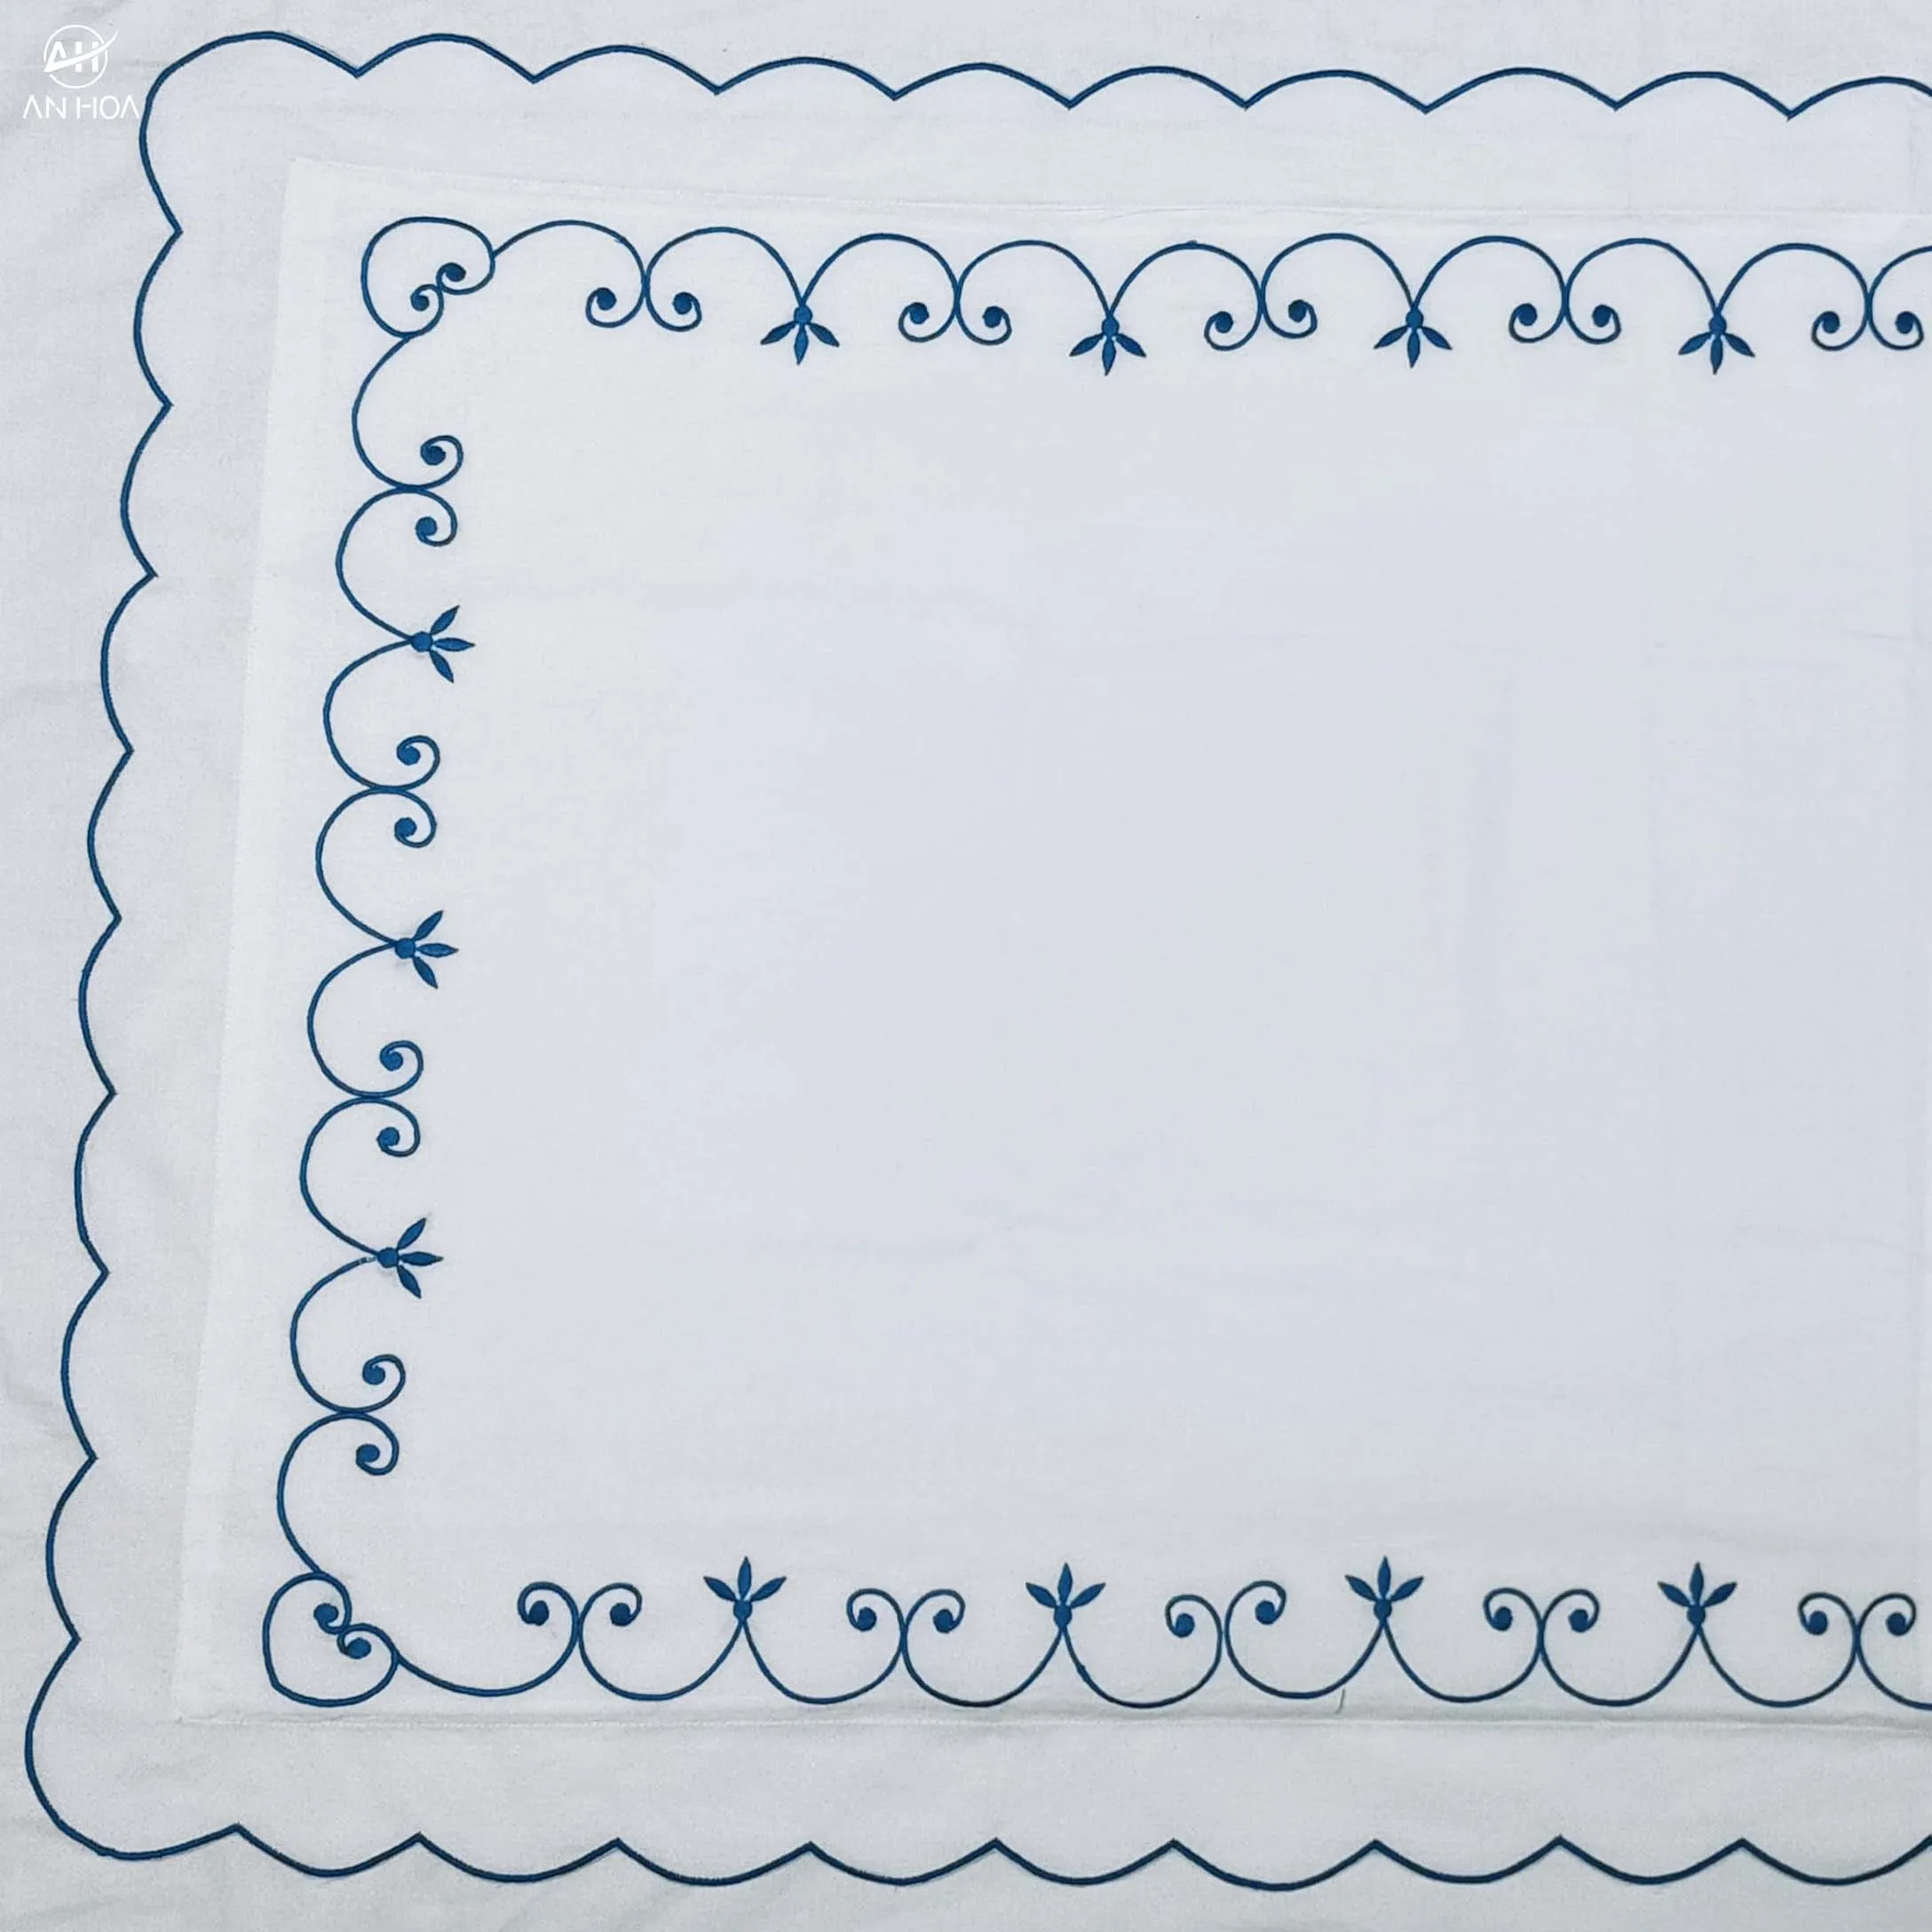 スカラップボーダー刺embroidery 100% ホワイトエジプト綿パーケール400TCカットワークスタンダードシャム、20 "* 30"